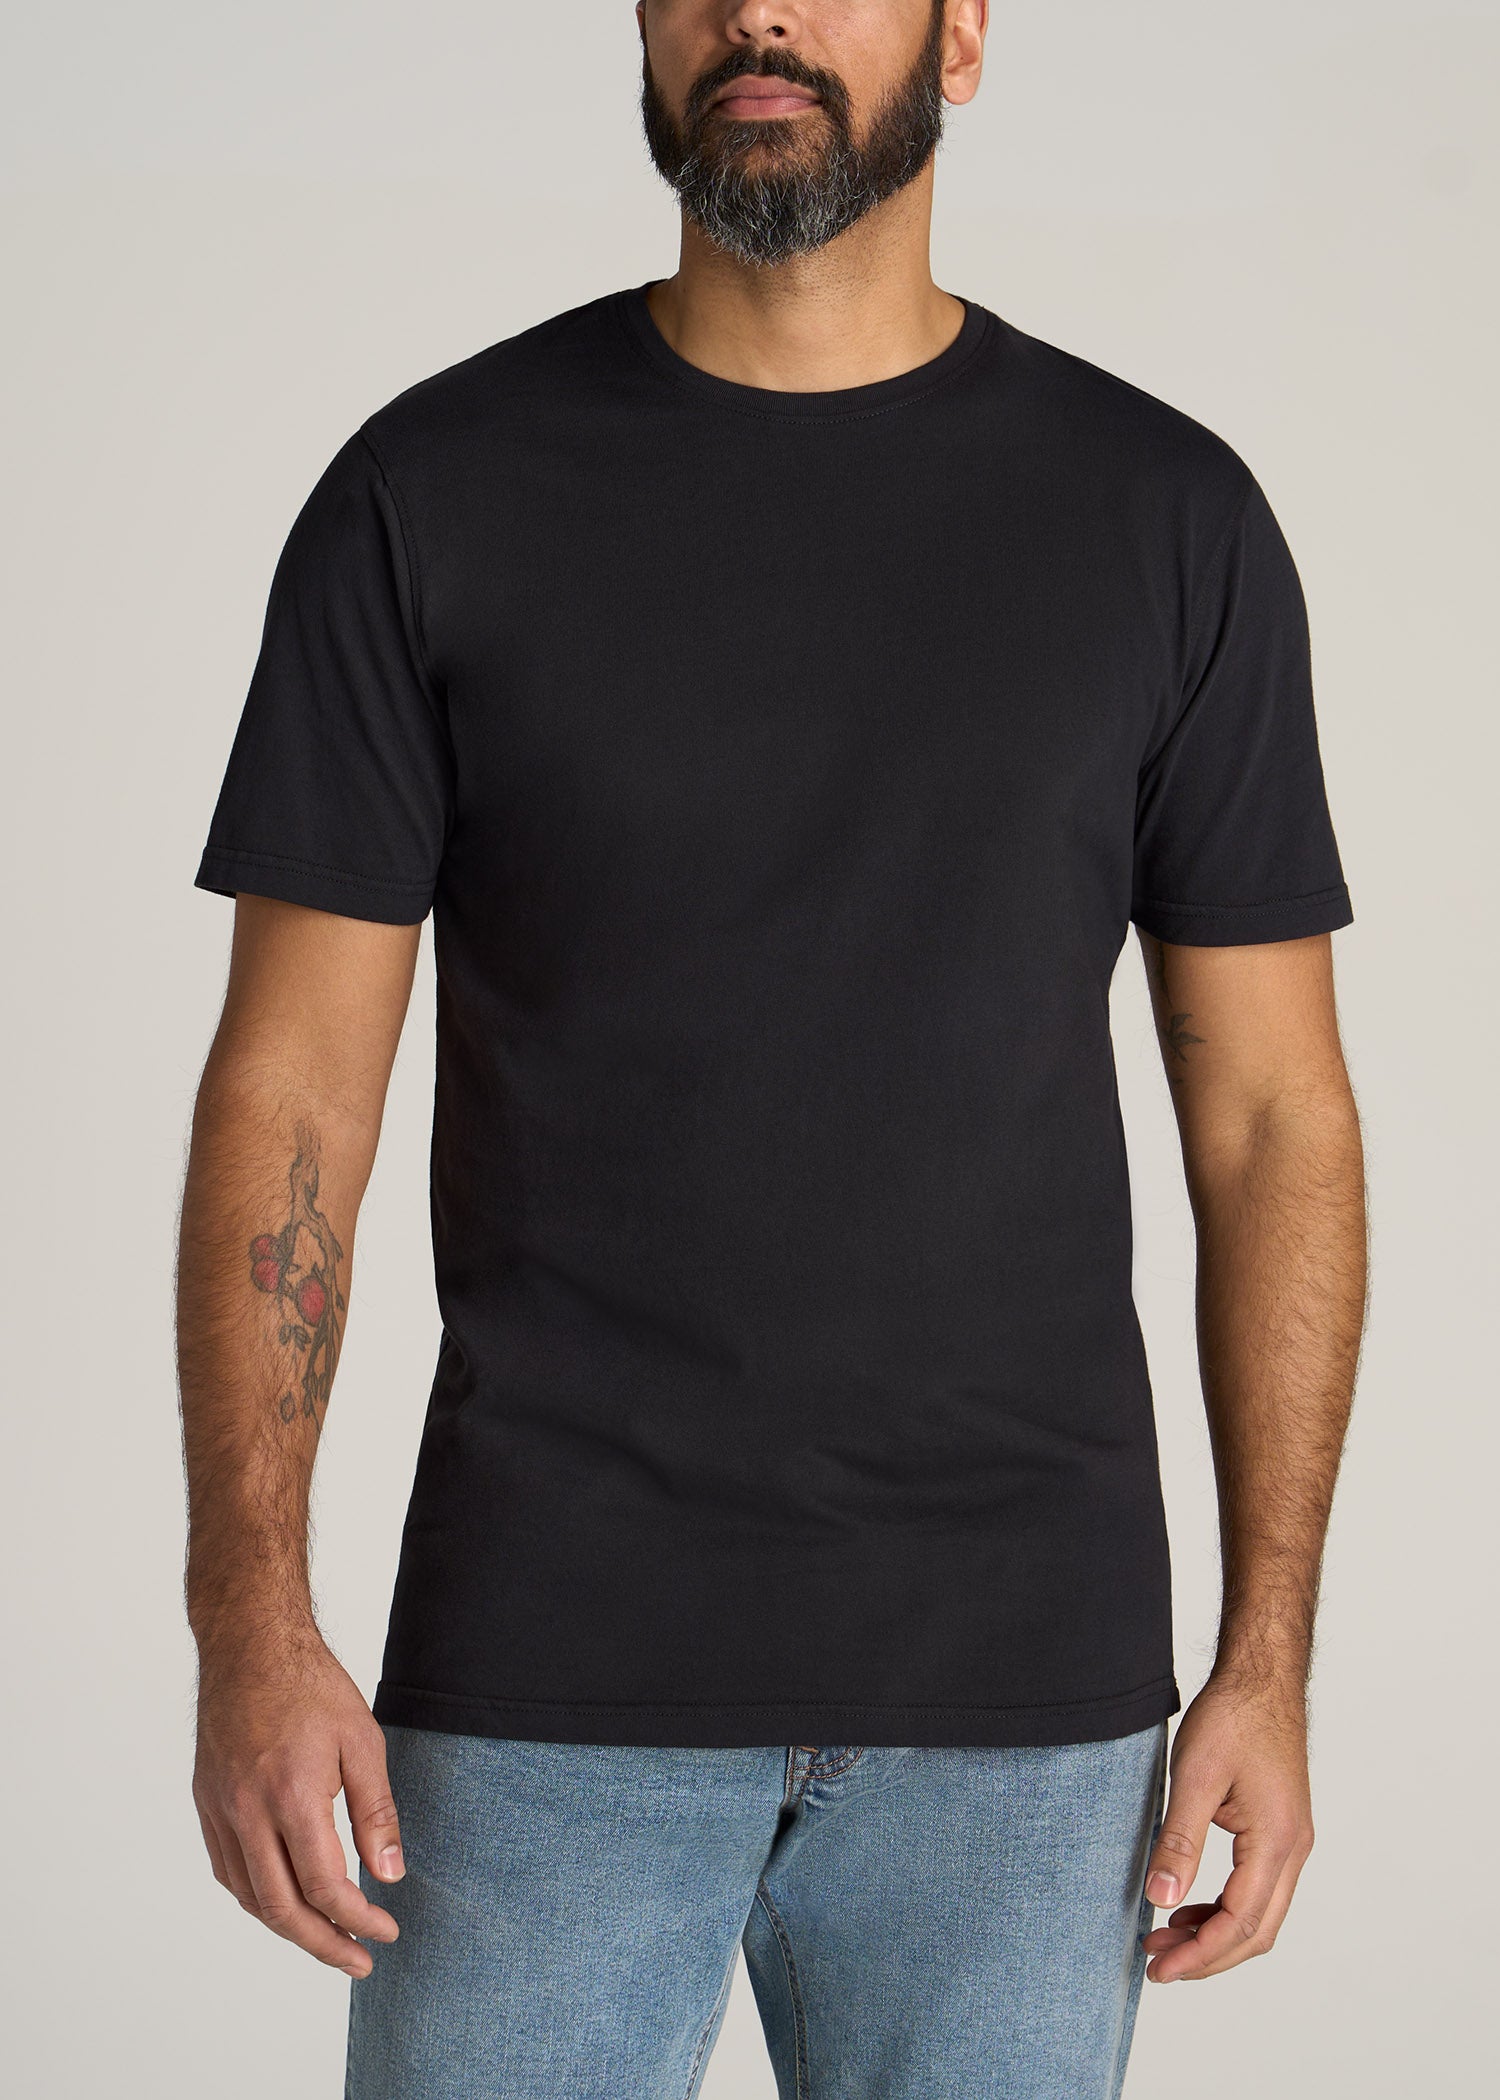 Women's Short Sleeve Relaxed Scoop Neck T-shirt - Ava & Viv™ Black